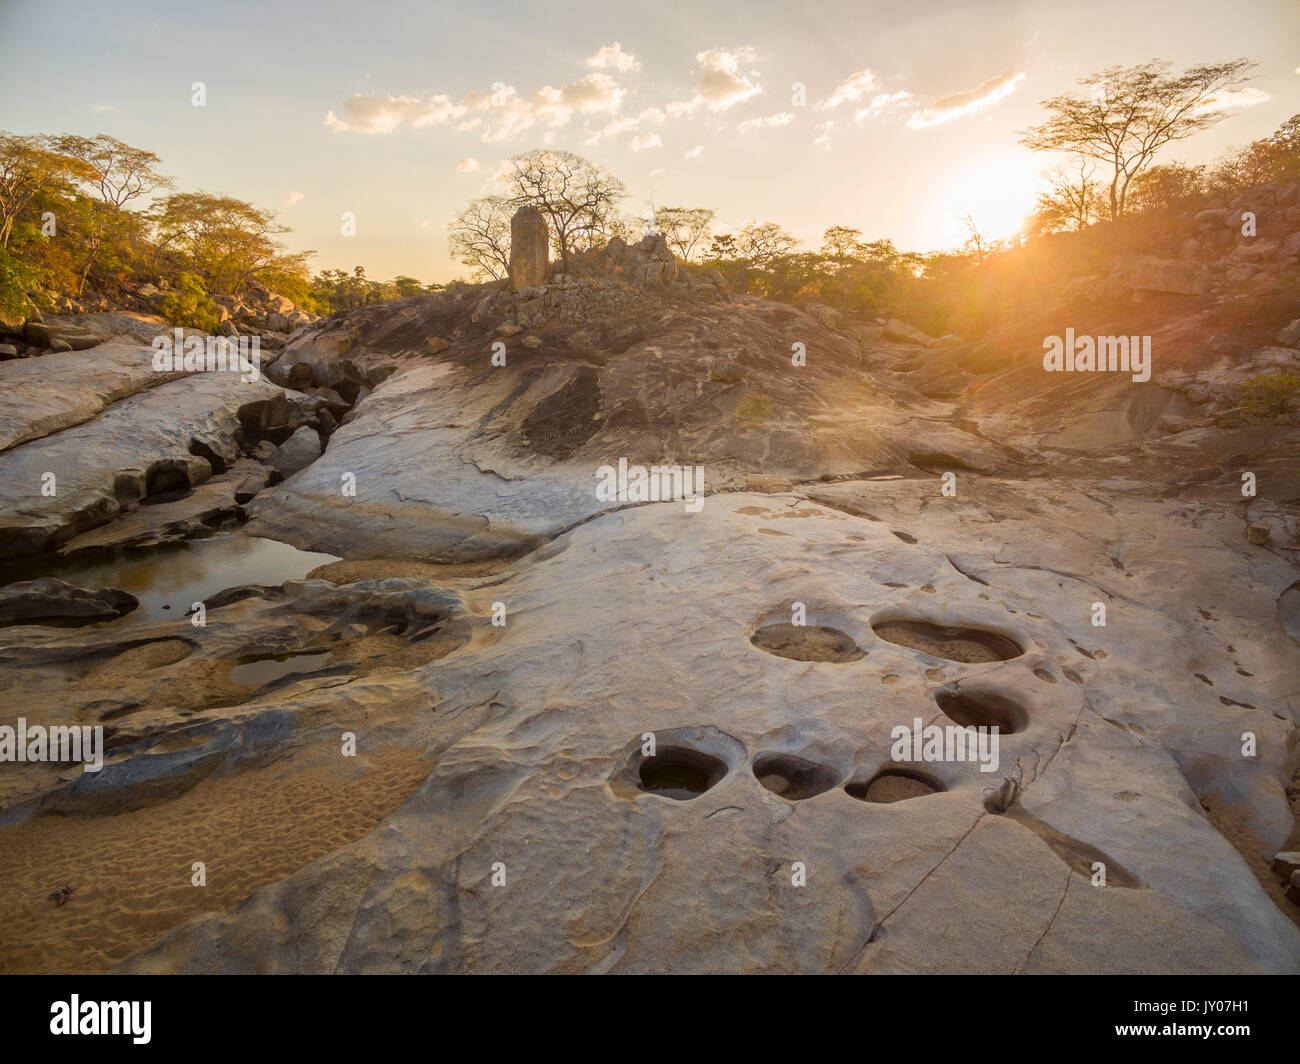 Eine dramatische Luftlandschaft eines erodierten Flussbettes im Umfurudzi Nationalpark in Simbabwe. Stockfoto